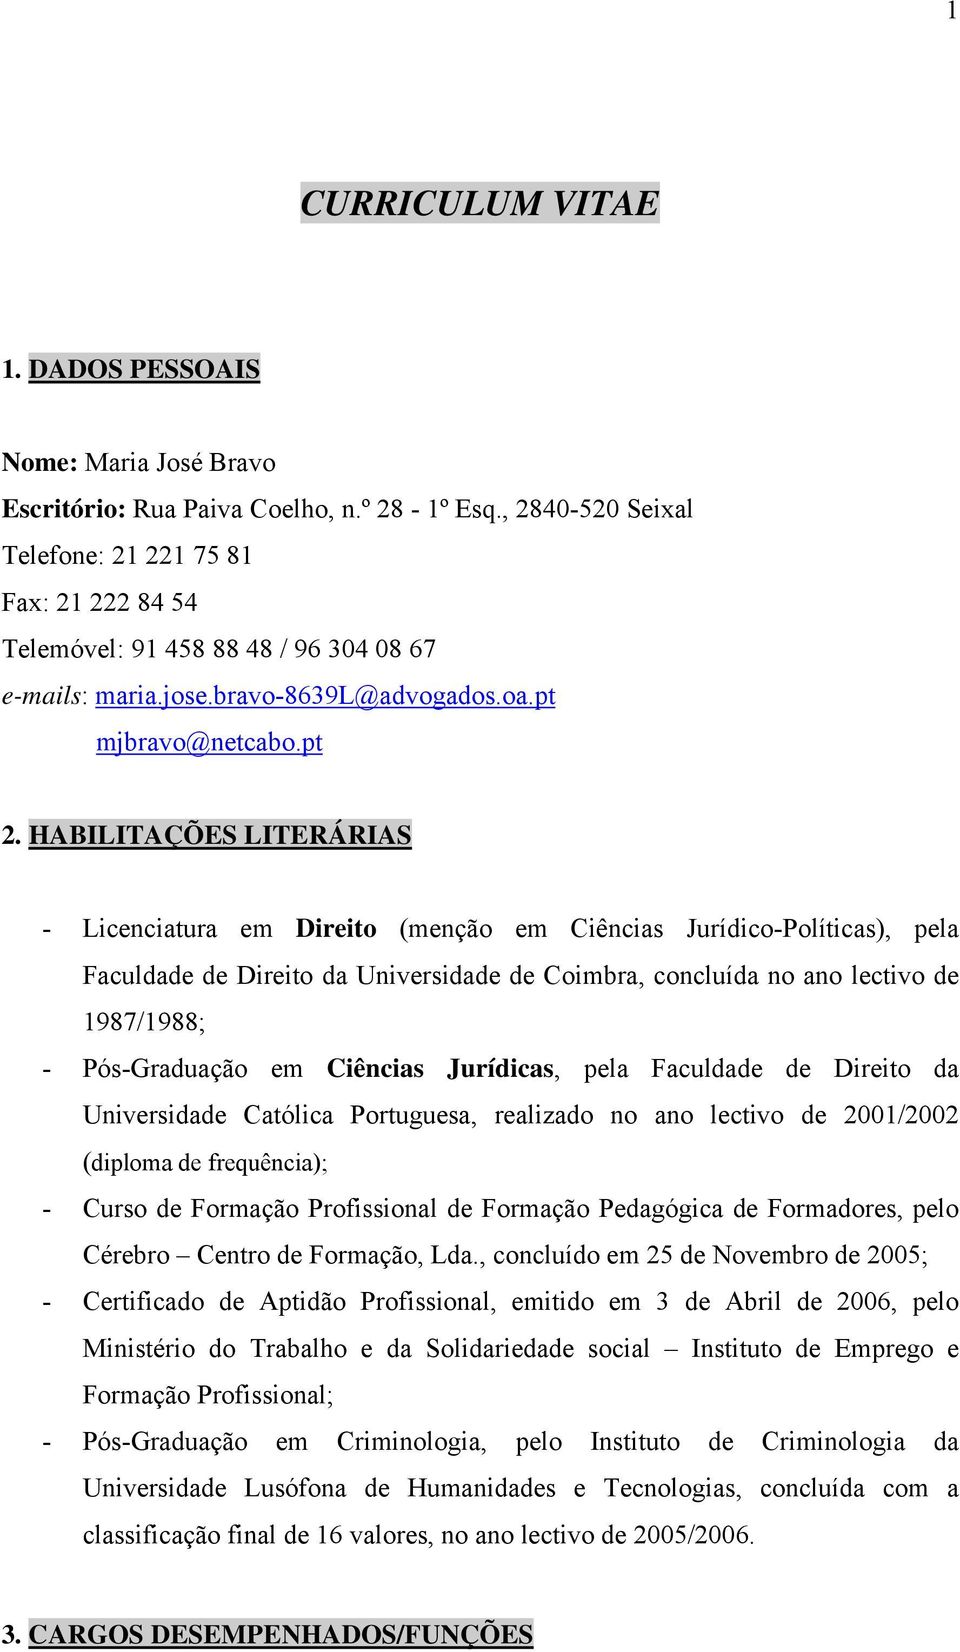 HABILITAÇÕES LITERÁRIAS - Licenciatura em Direito (menção em Ciências Jurídico-Políticas), pela Faculdade de Direito da Universidade de Coimbra, concluída no ano lectivo de 1987/1988; - Pós-Graduação